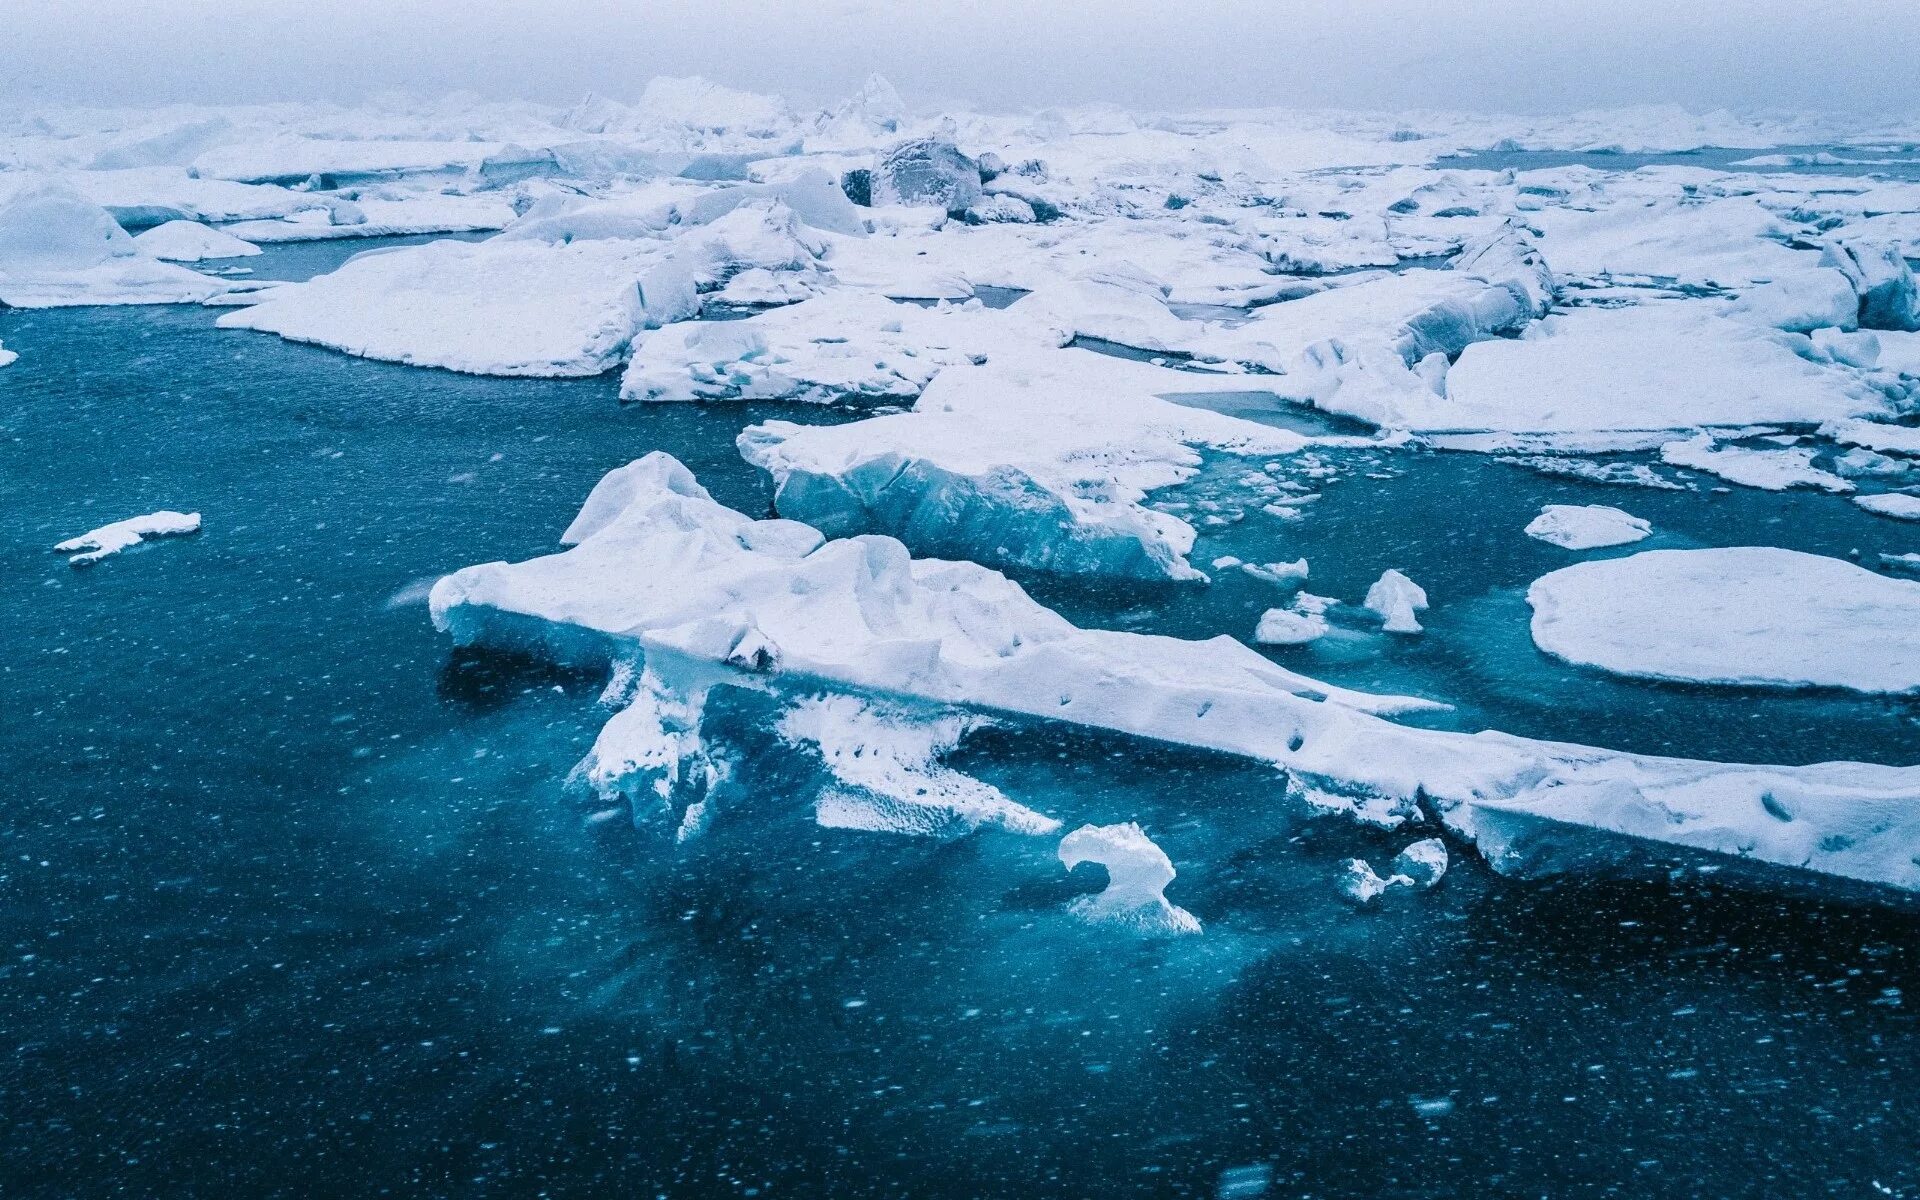 Арктика Северный Ледовитый океан. Арктика острова в Северном Ледовитом океане. Северный Ледовитый океан лед море. Карское море ледяной Покров. Как меняется природа арктических морей с запада